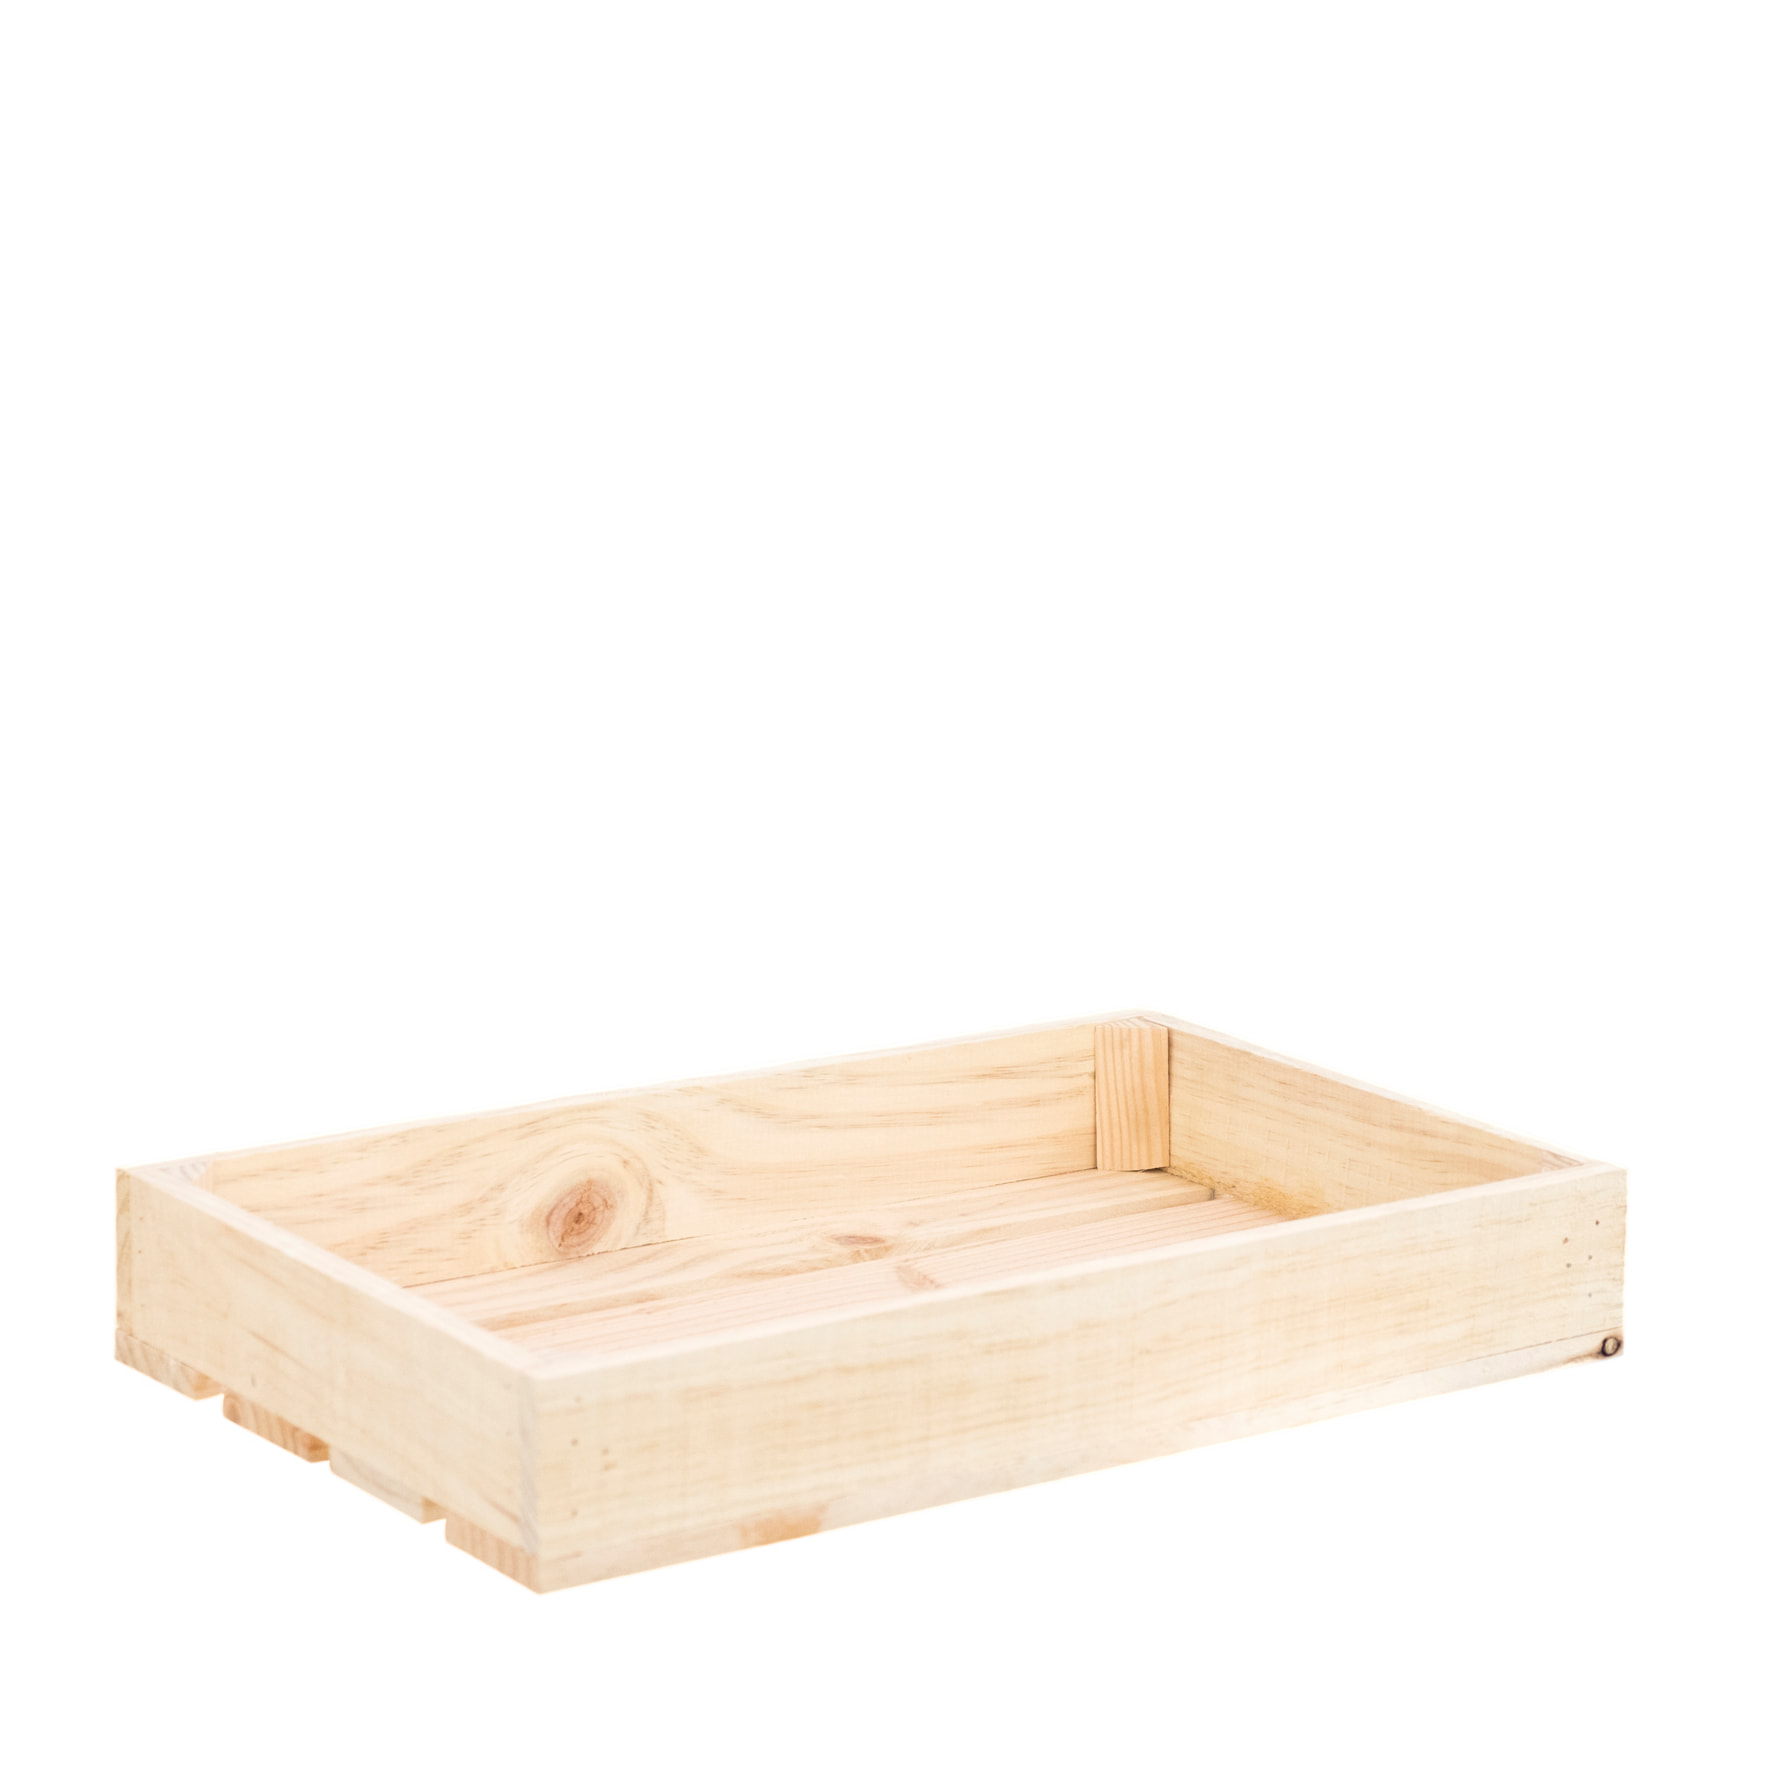 Decowood - Petite boîte en bois massif ton naturel Hauteur: 7.5 Longueur:  49 Largeur: 29.5